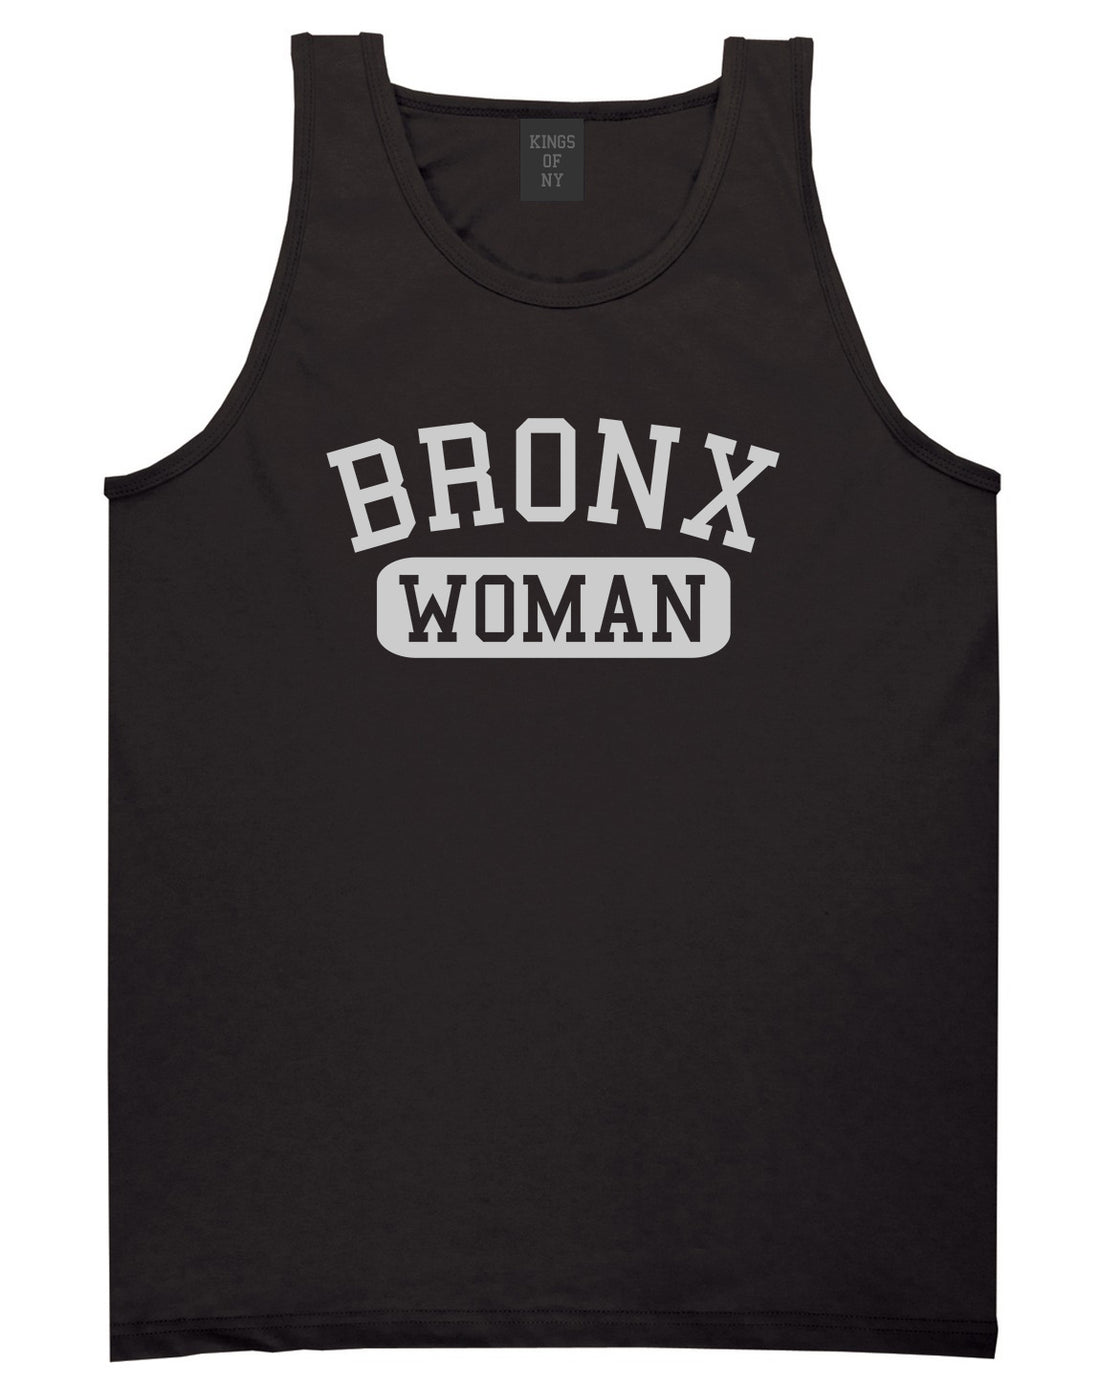 Bronx Woman Mens Tank Top T-Shirt Black